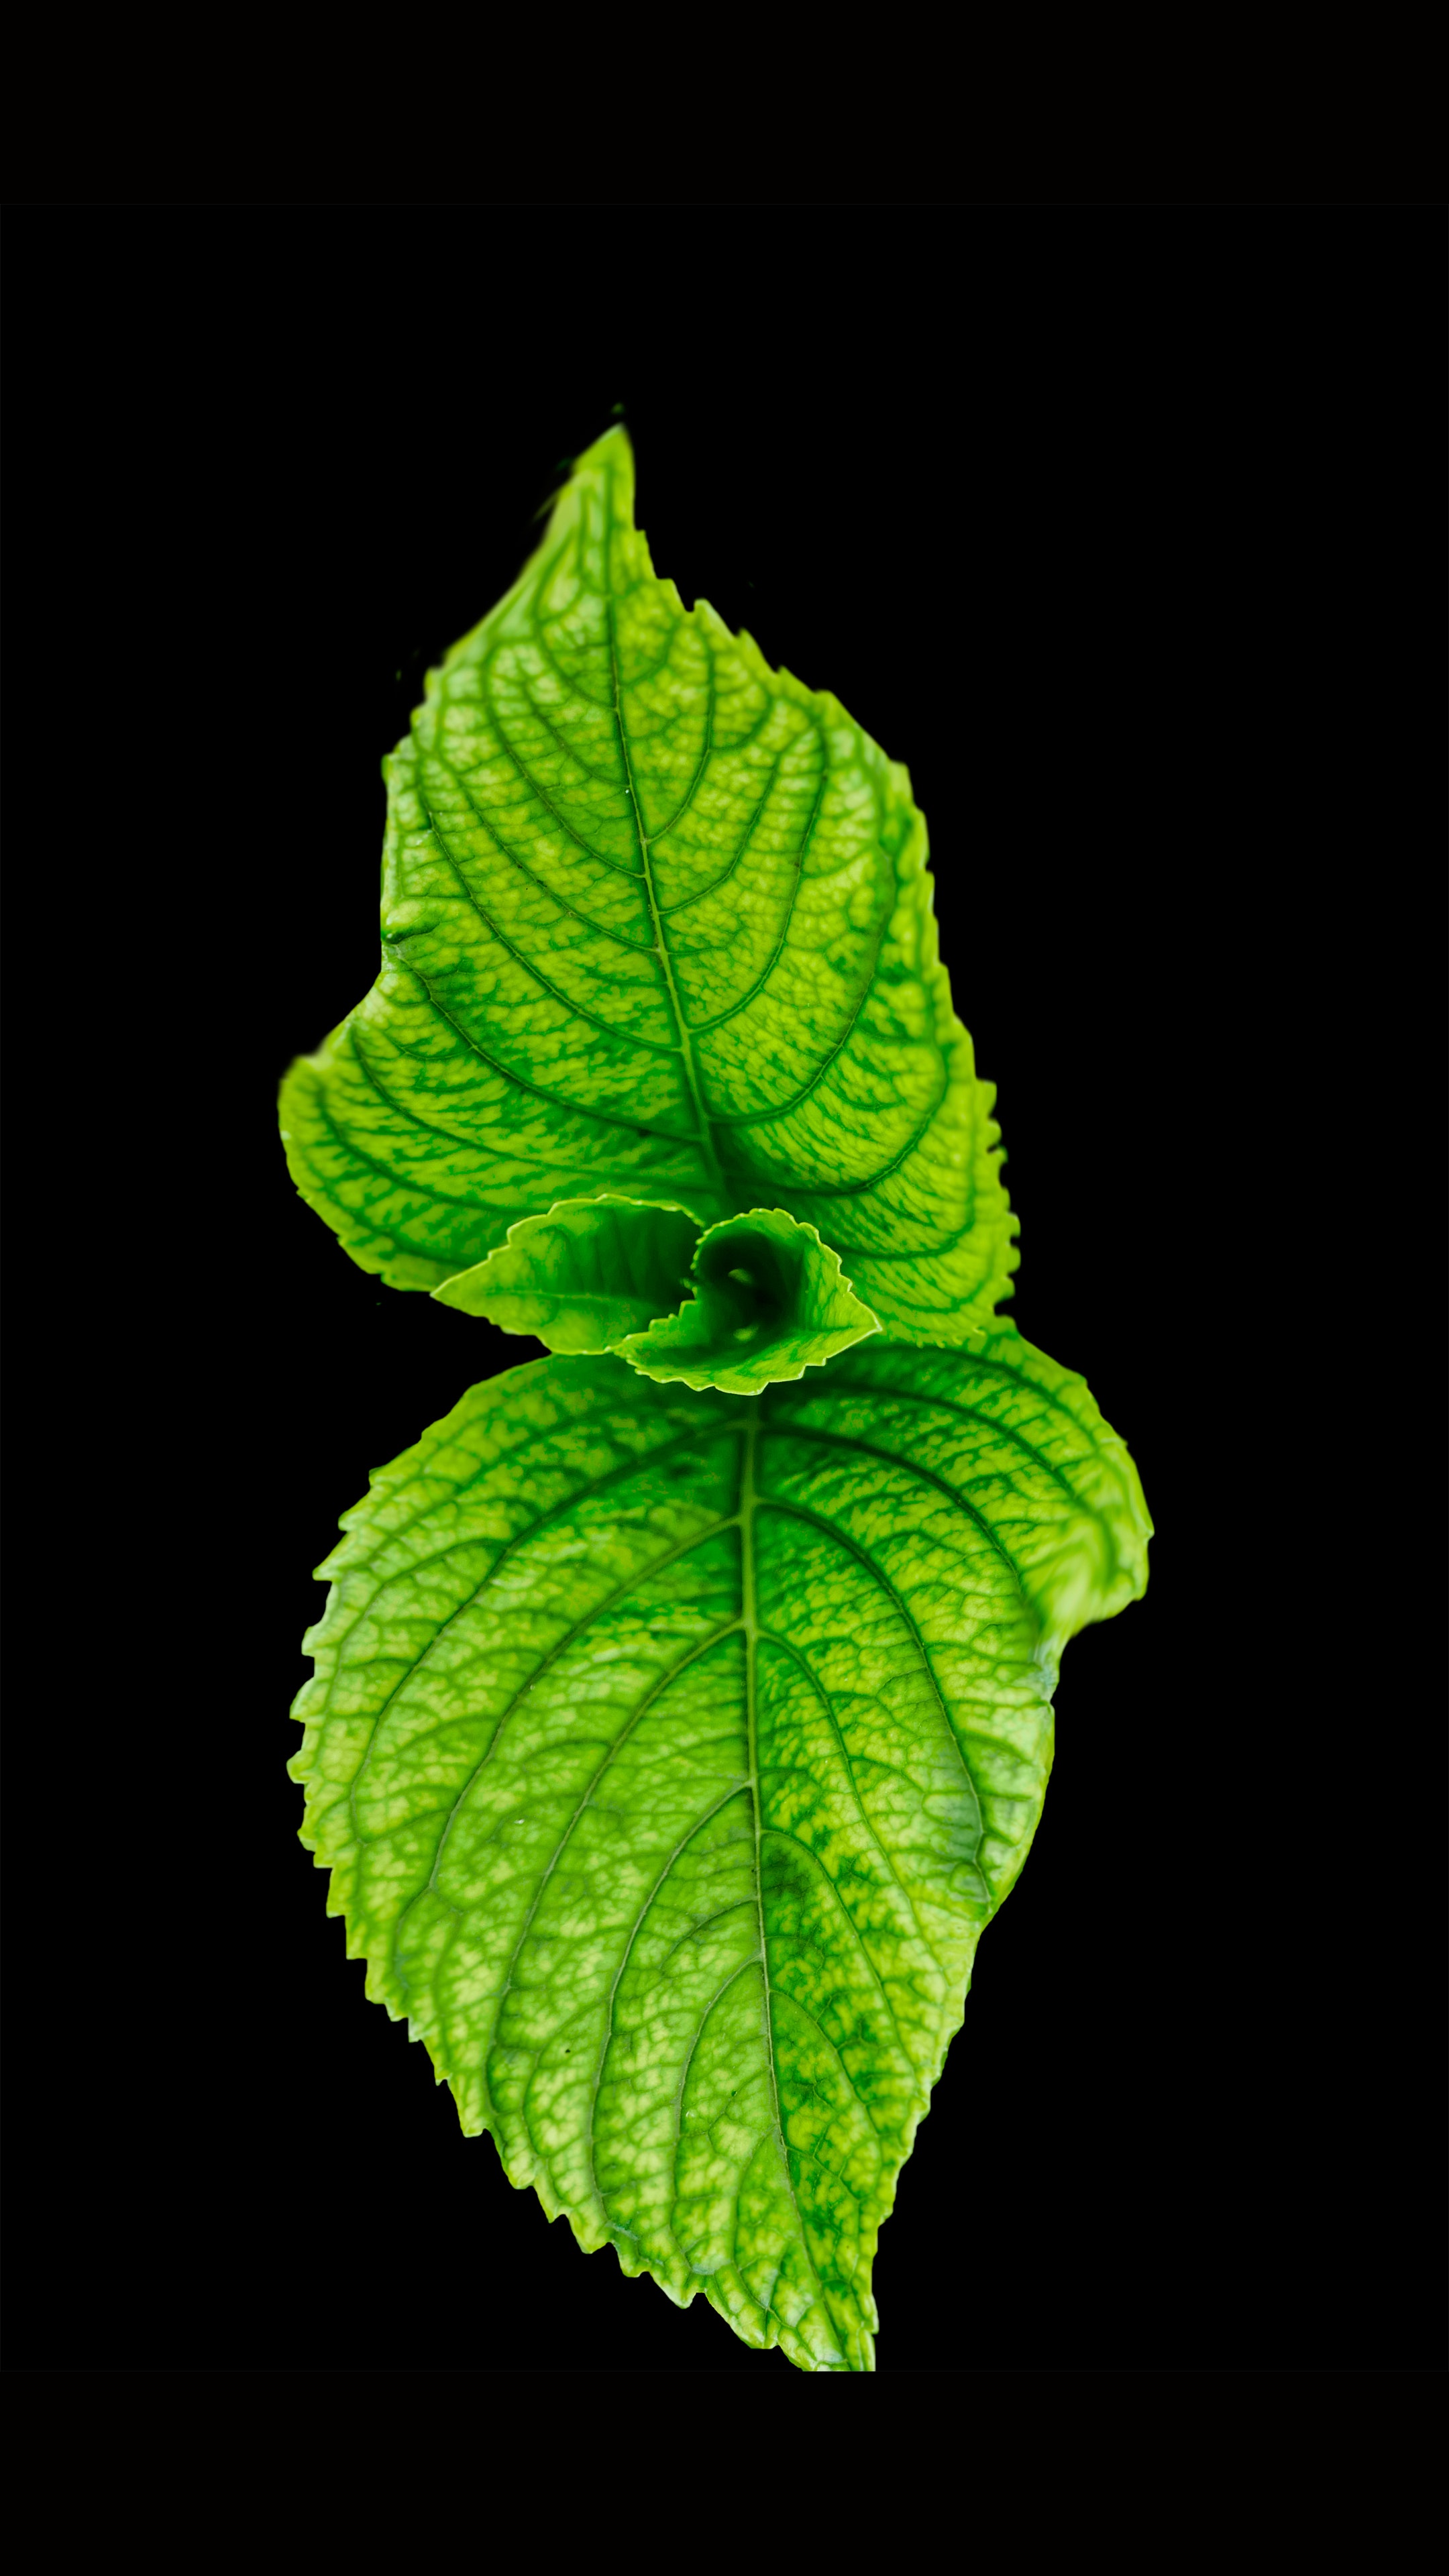 Green leaf photo